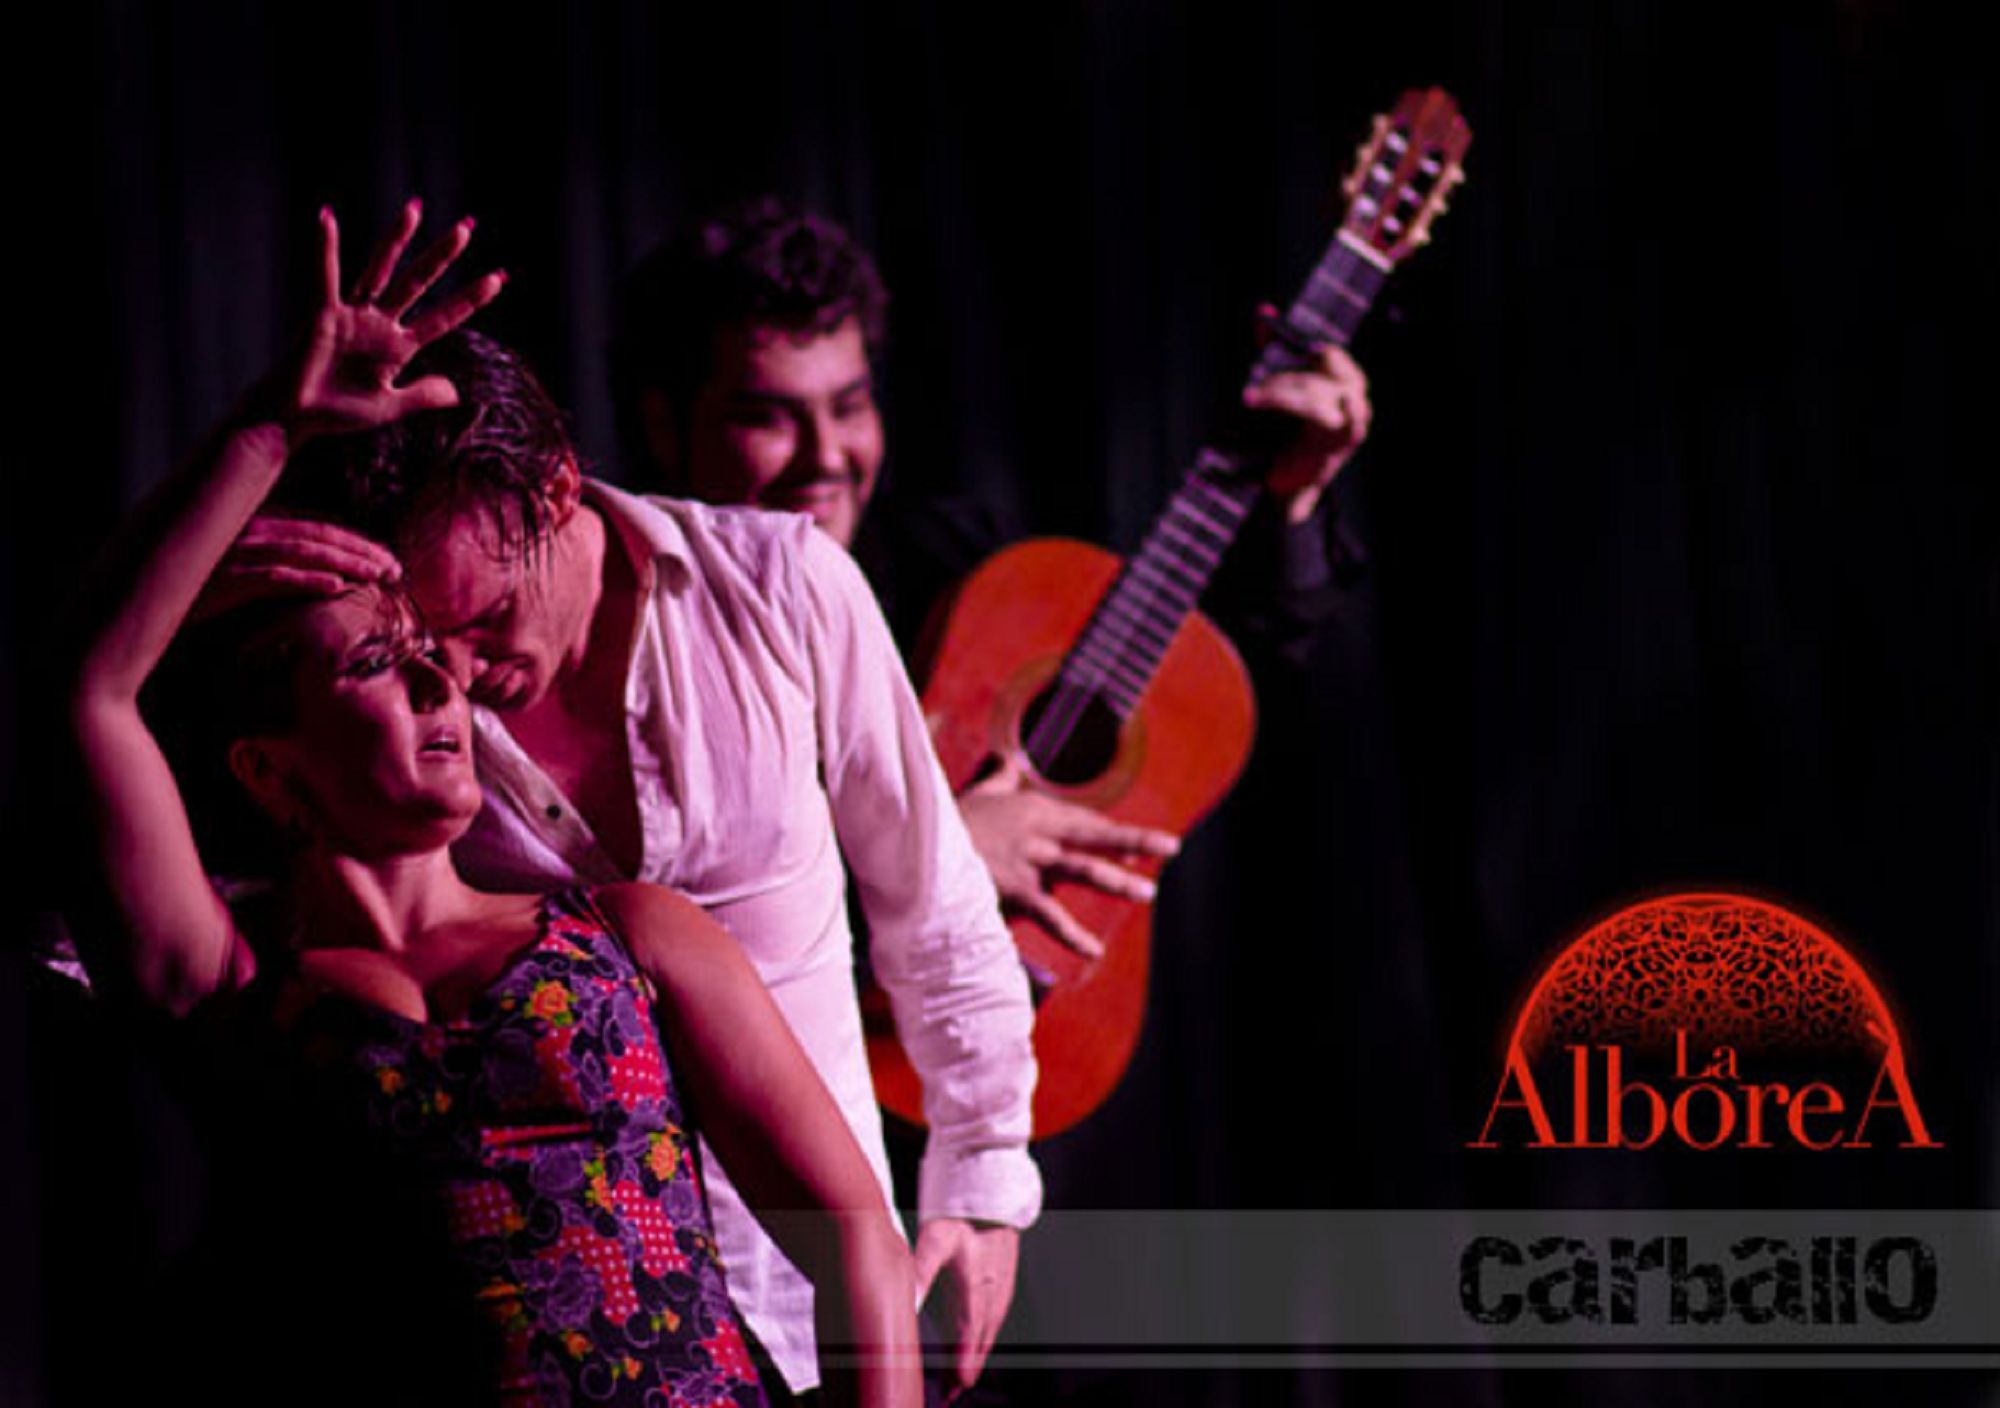 Flamenco-Show La Alboreá Tickets in granada tablao